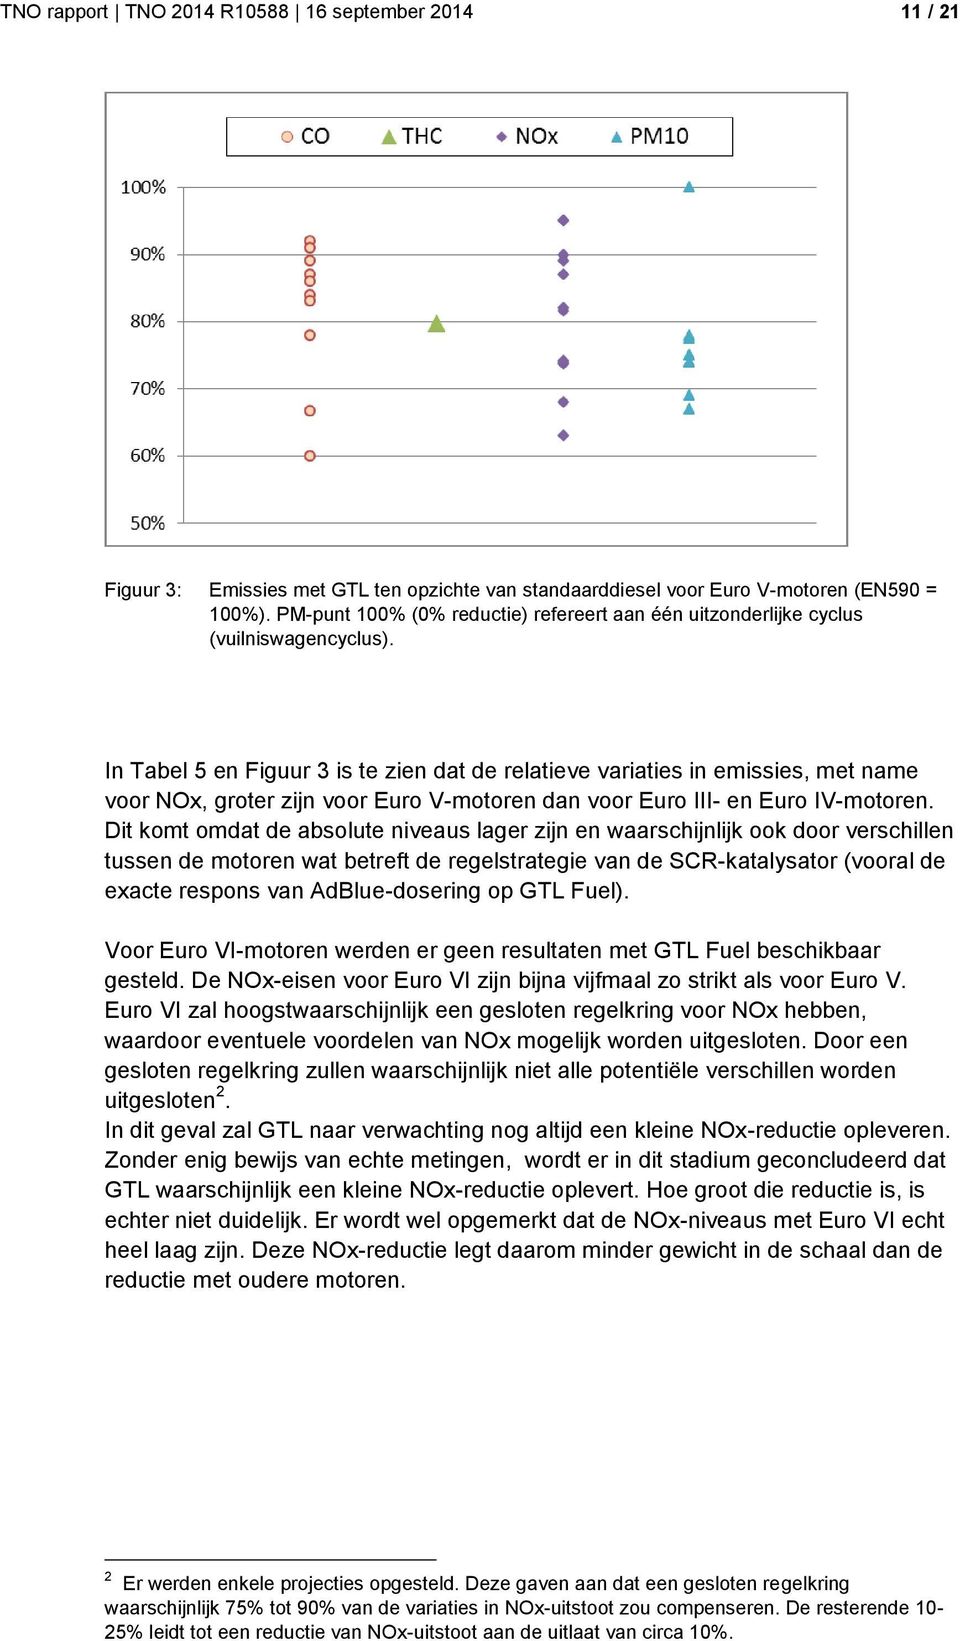 In Tabel 5 en Figuur 3 is te zien dat de relatieve variaties in emissies, met name voor NOx, groter zijn voor Euro V-motoren dan voor Euro III- en Euro IV-motoren.